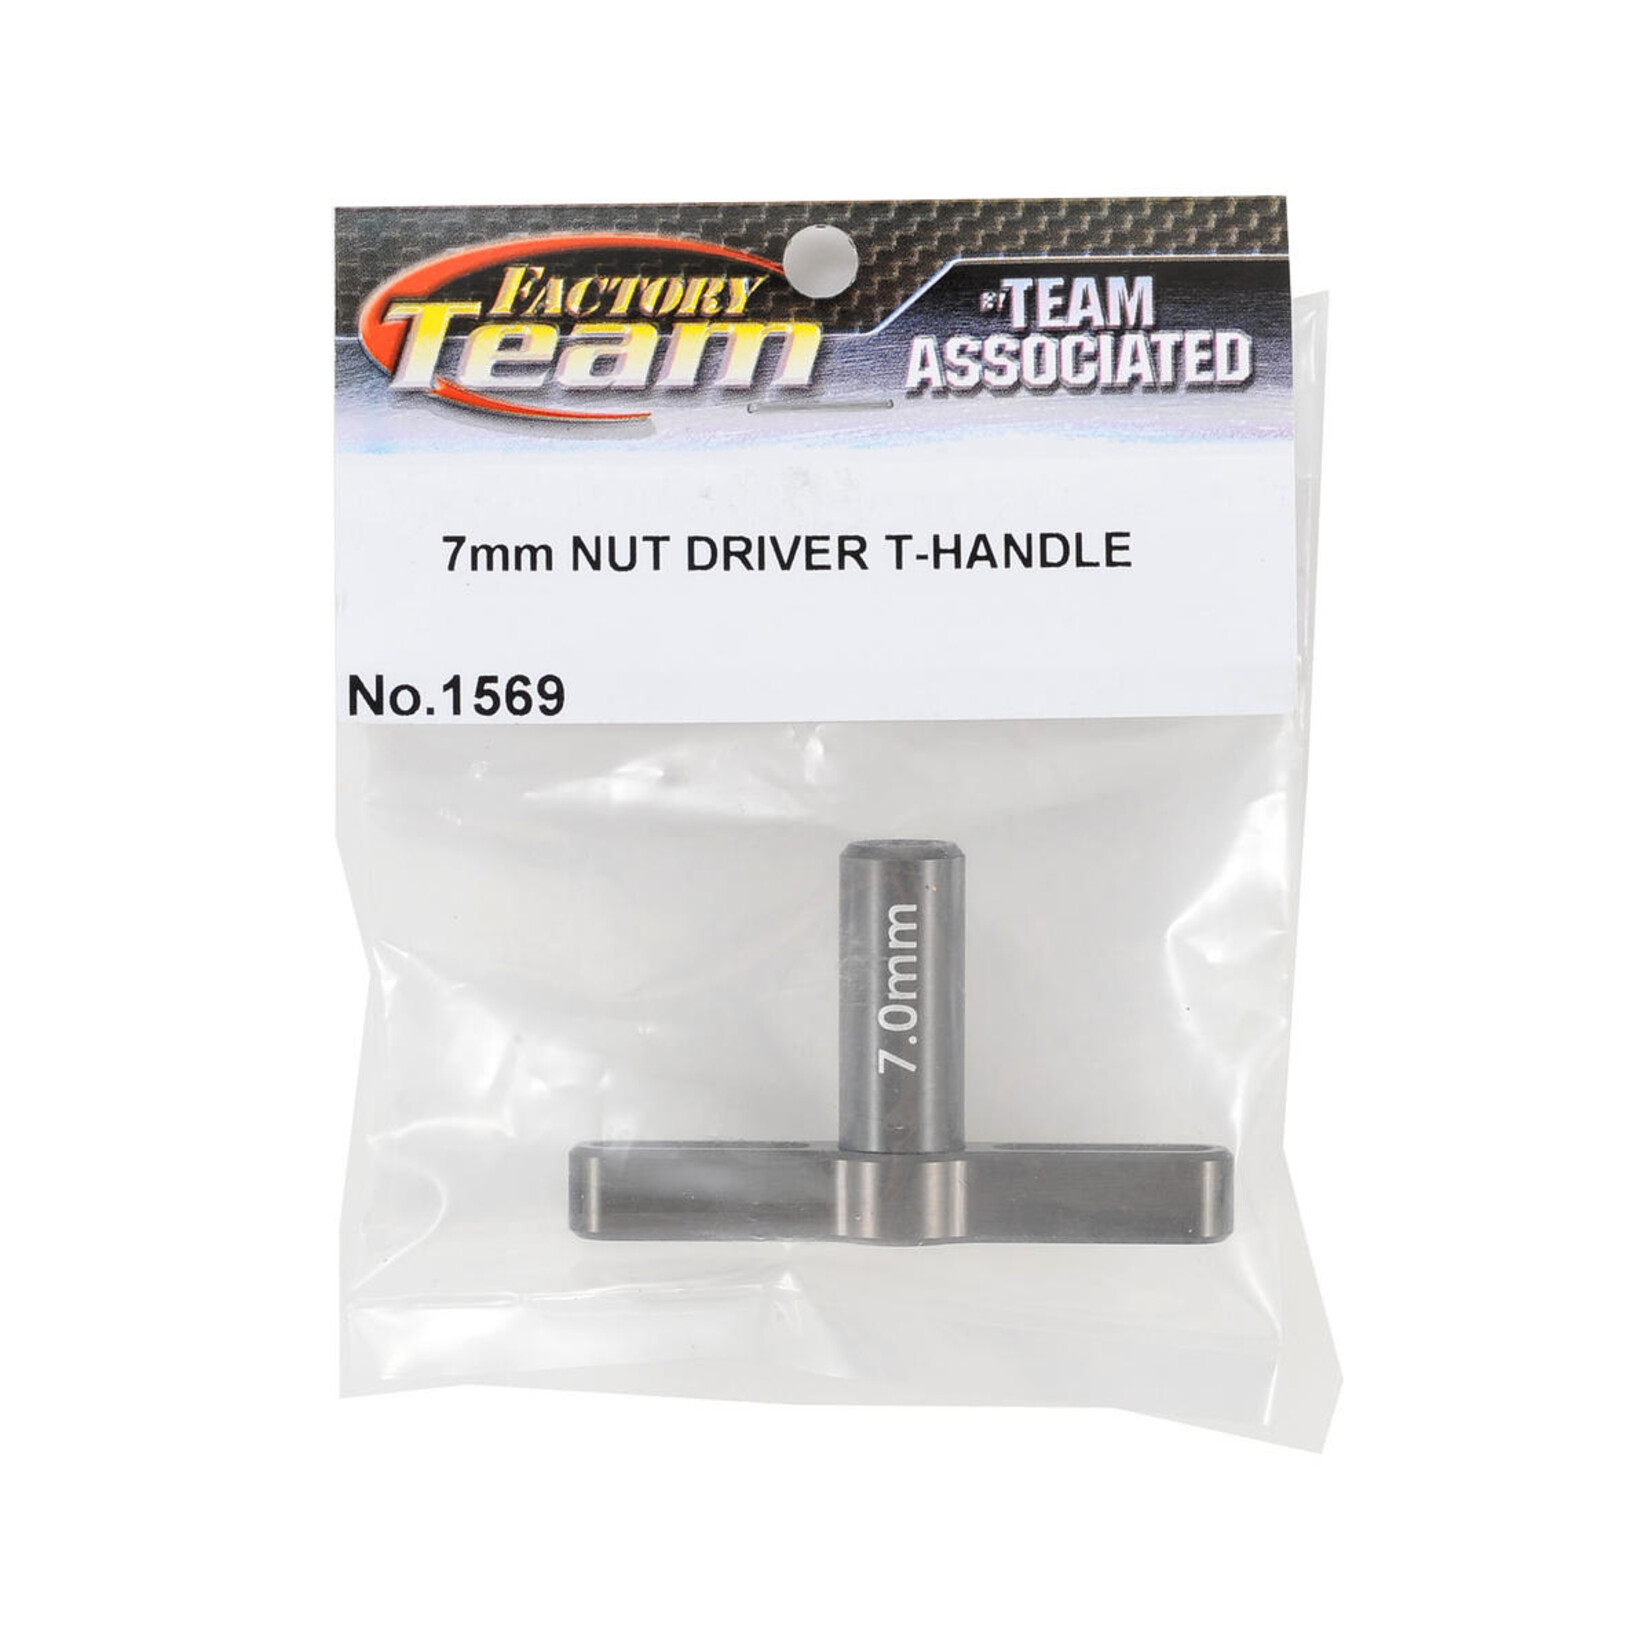 Team Associated Team Associated Factory Team T-Handle Nut Driver (7mm) #1569